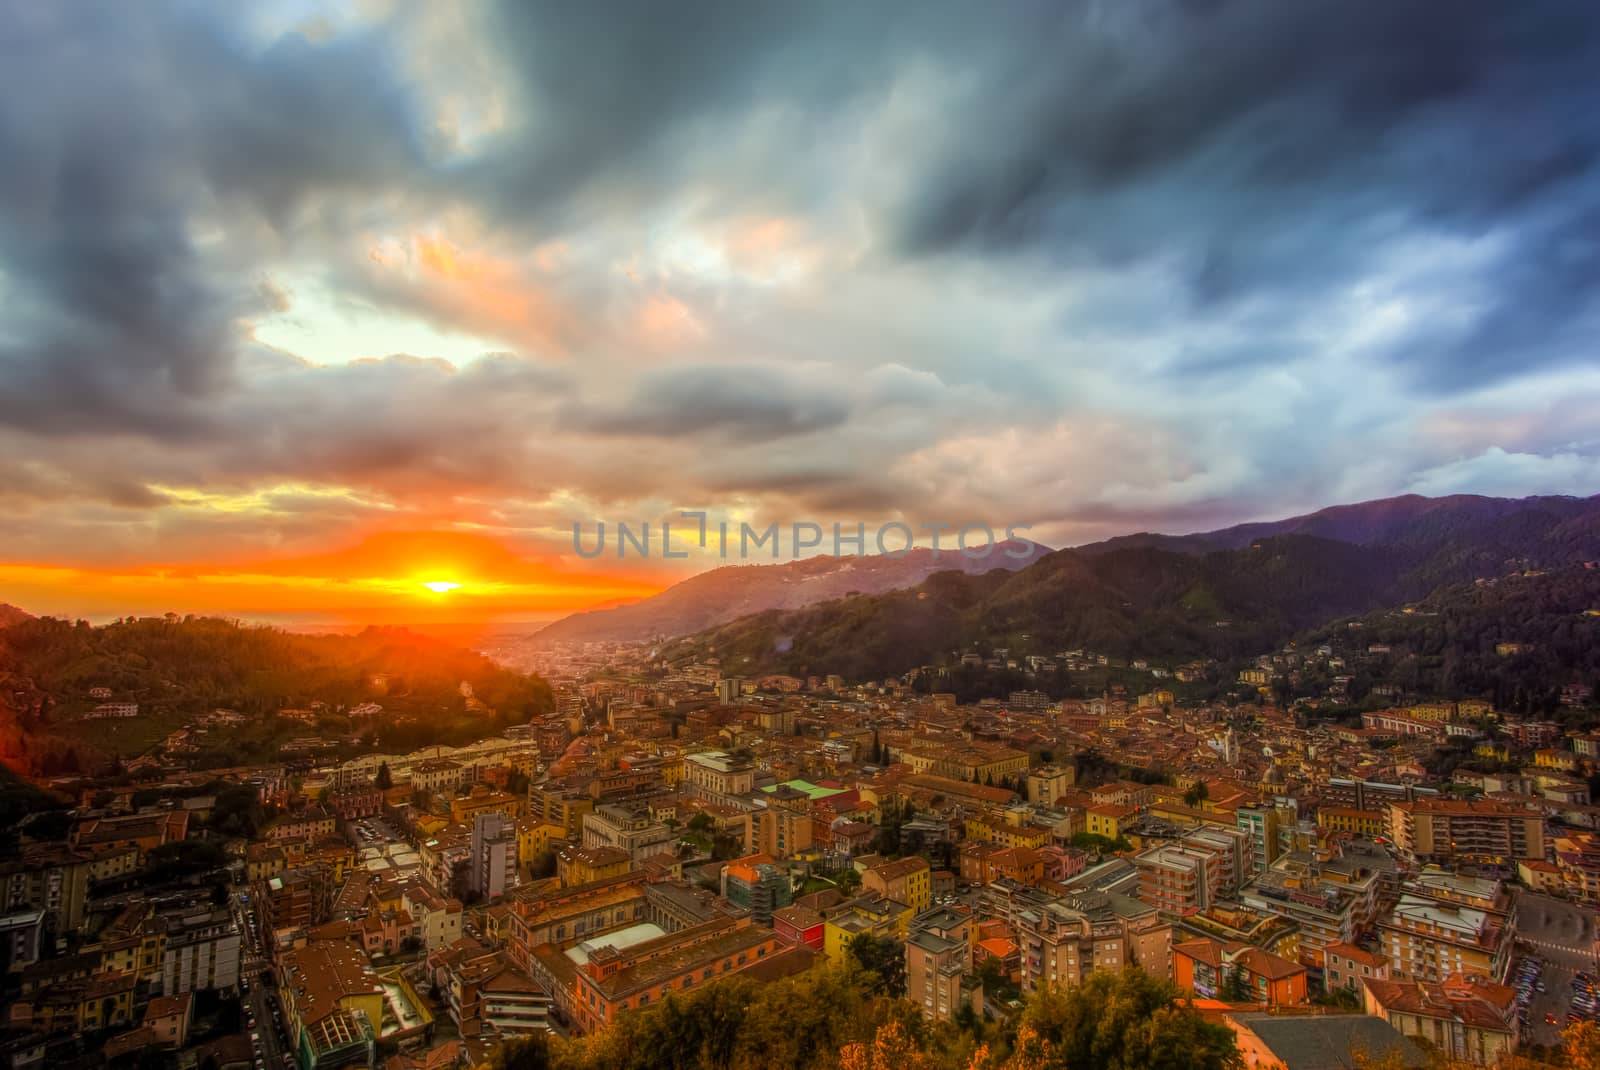 City of Carrara by nicobernieri